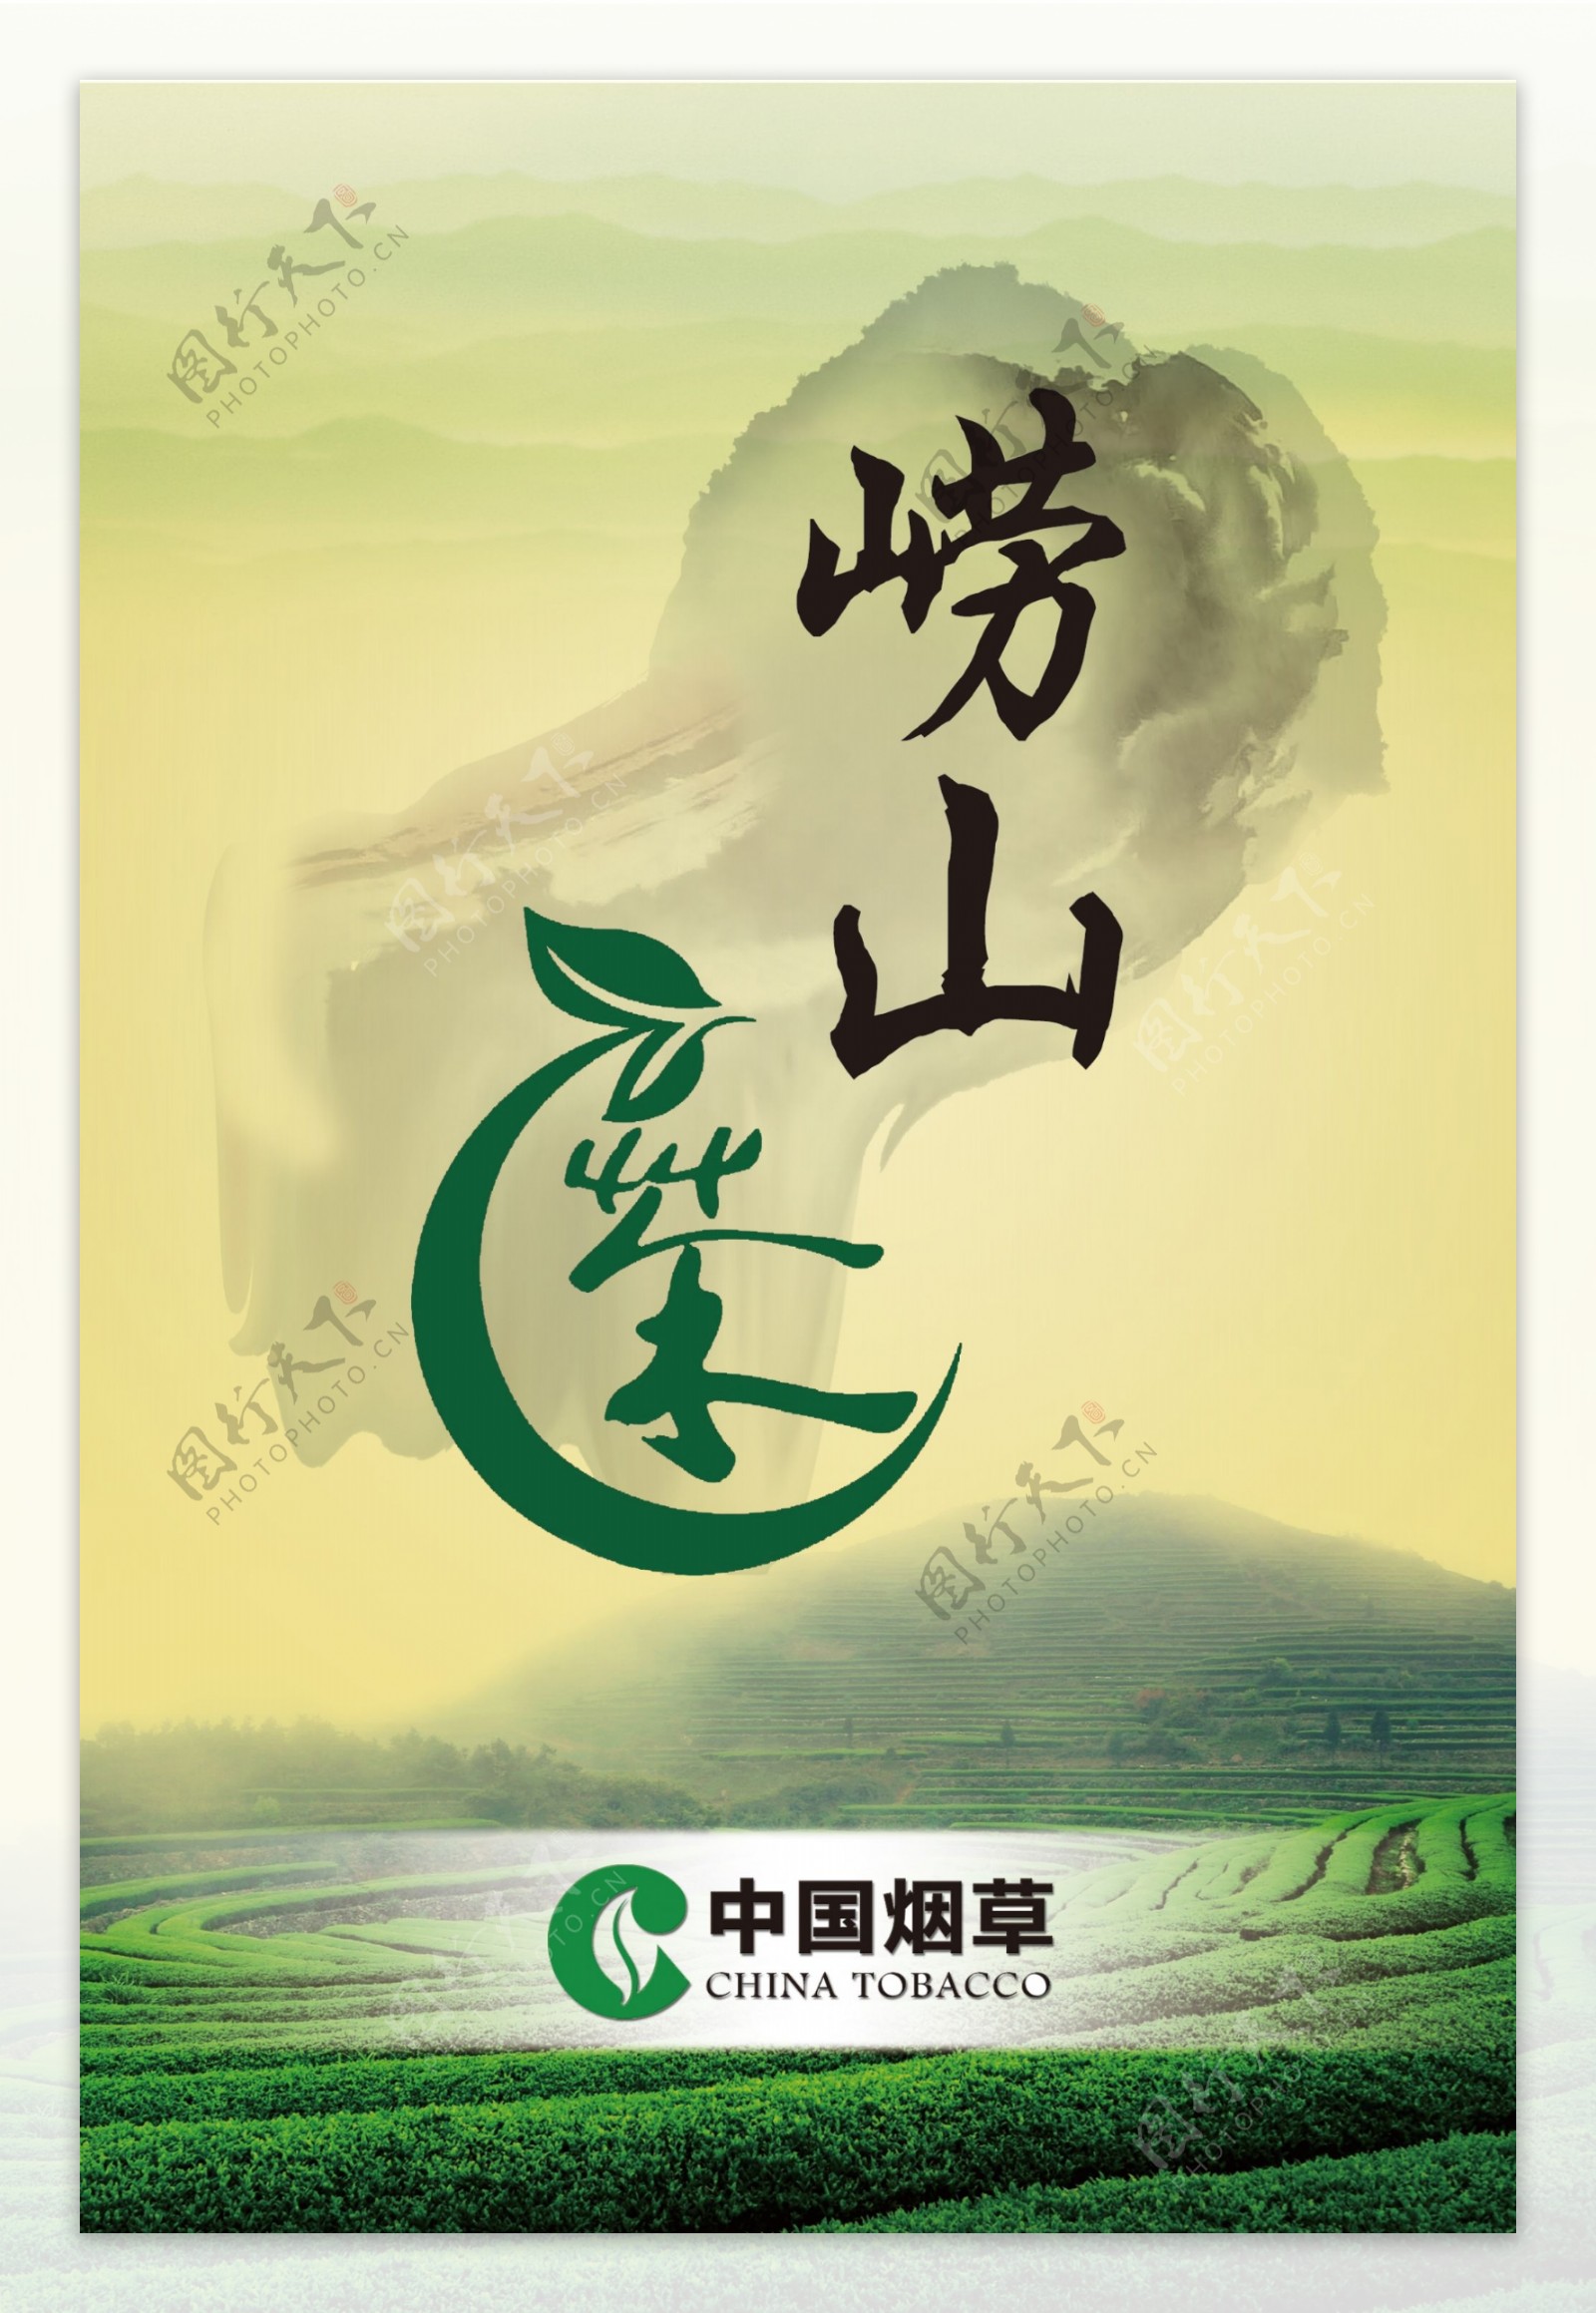 崂山茶中国烟草广告灯箱设计